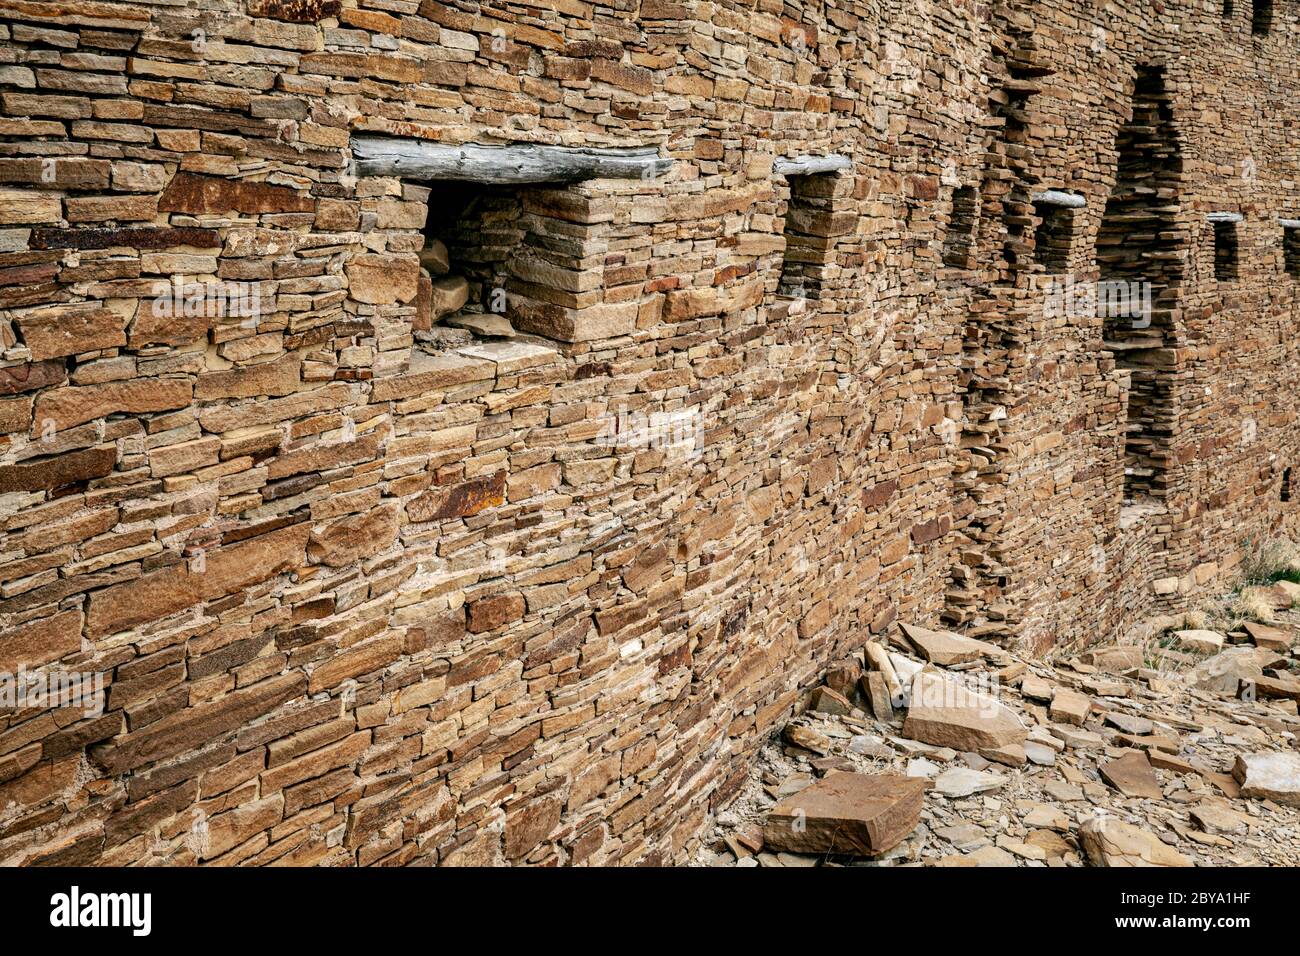 NM00612-00...NEW MEXICO - Masonary stone wall at Penasco Blanco in Chaco Culture National Historic Park. Stock Photo